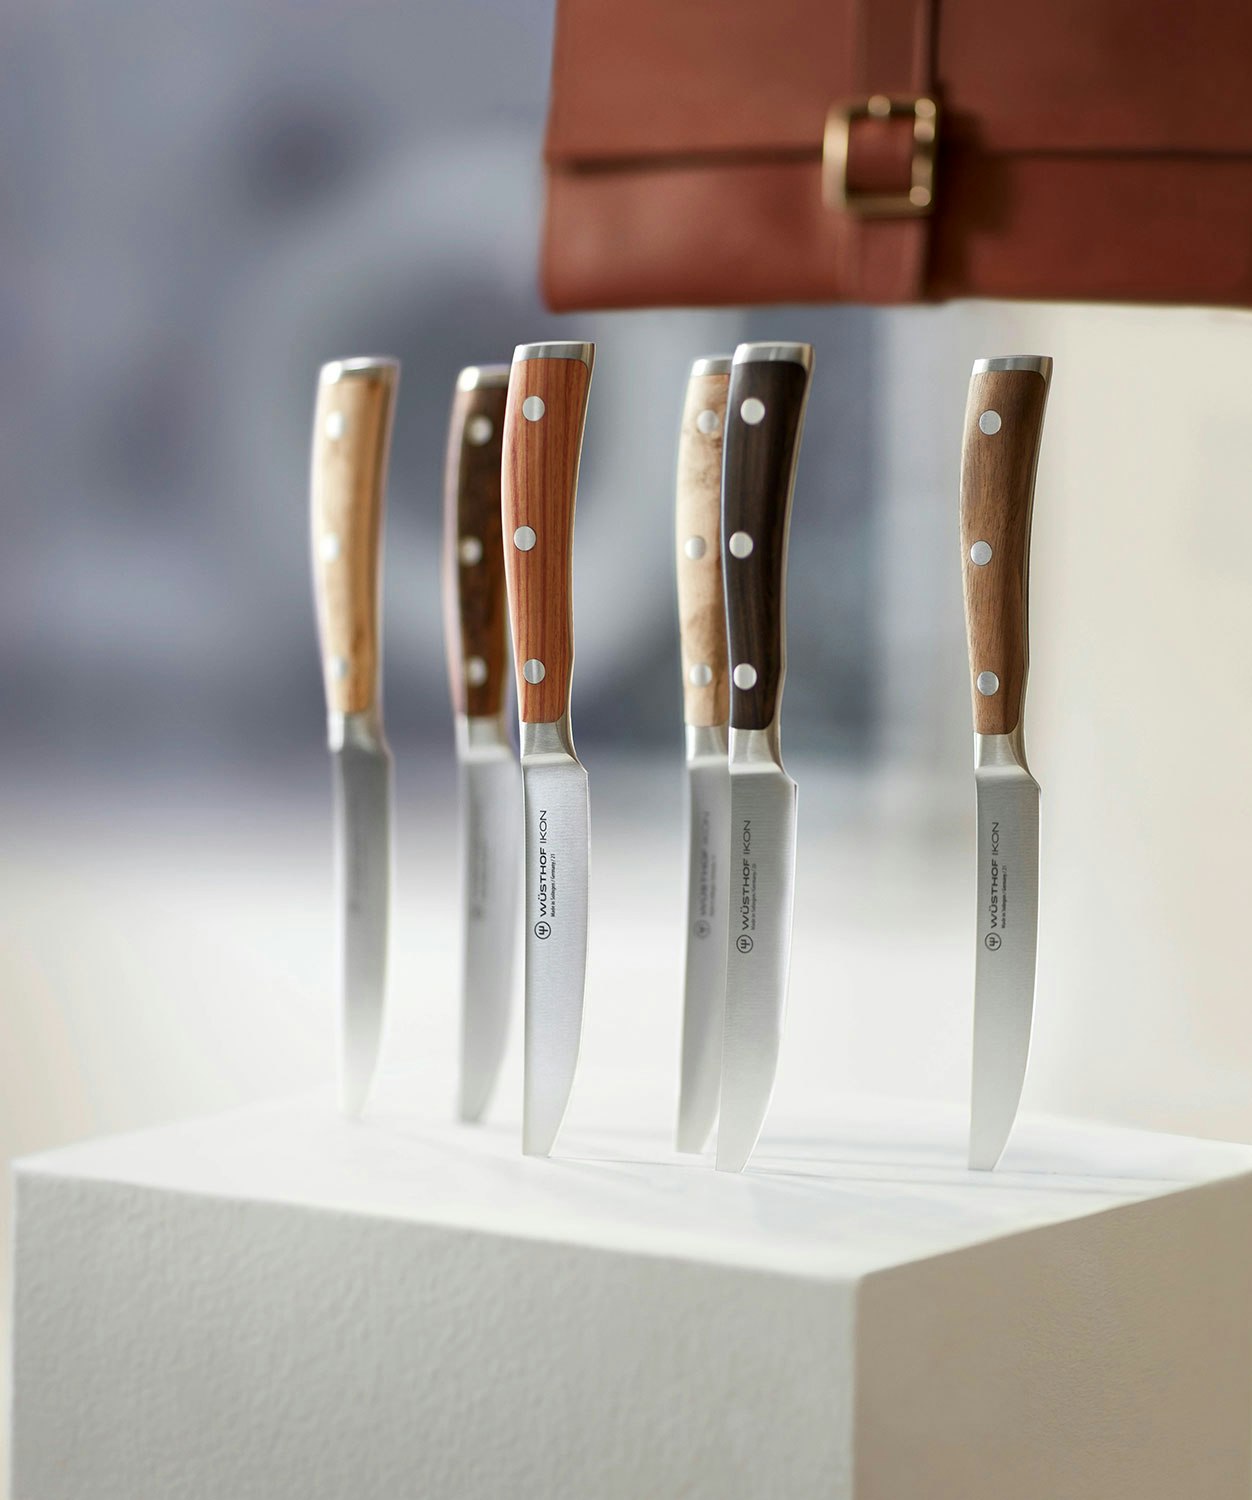 Jamie Oliver Knife Block With 5 Knives - Tefal @ RoyalDesign